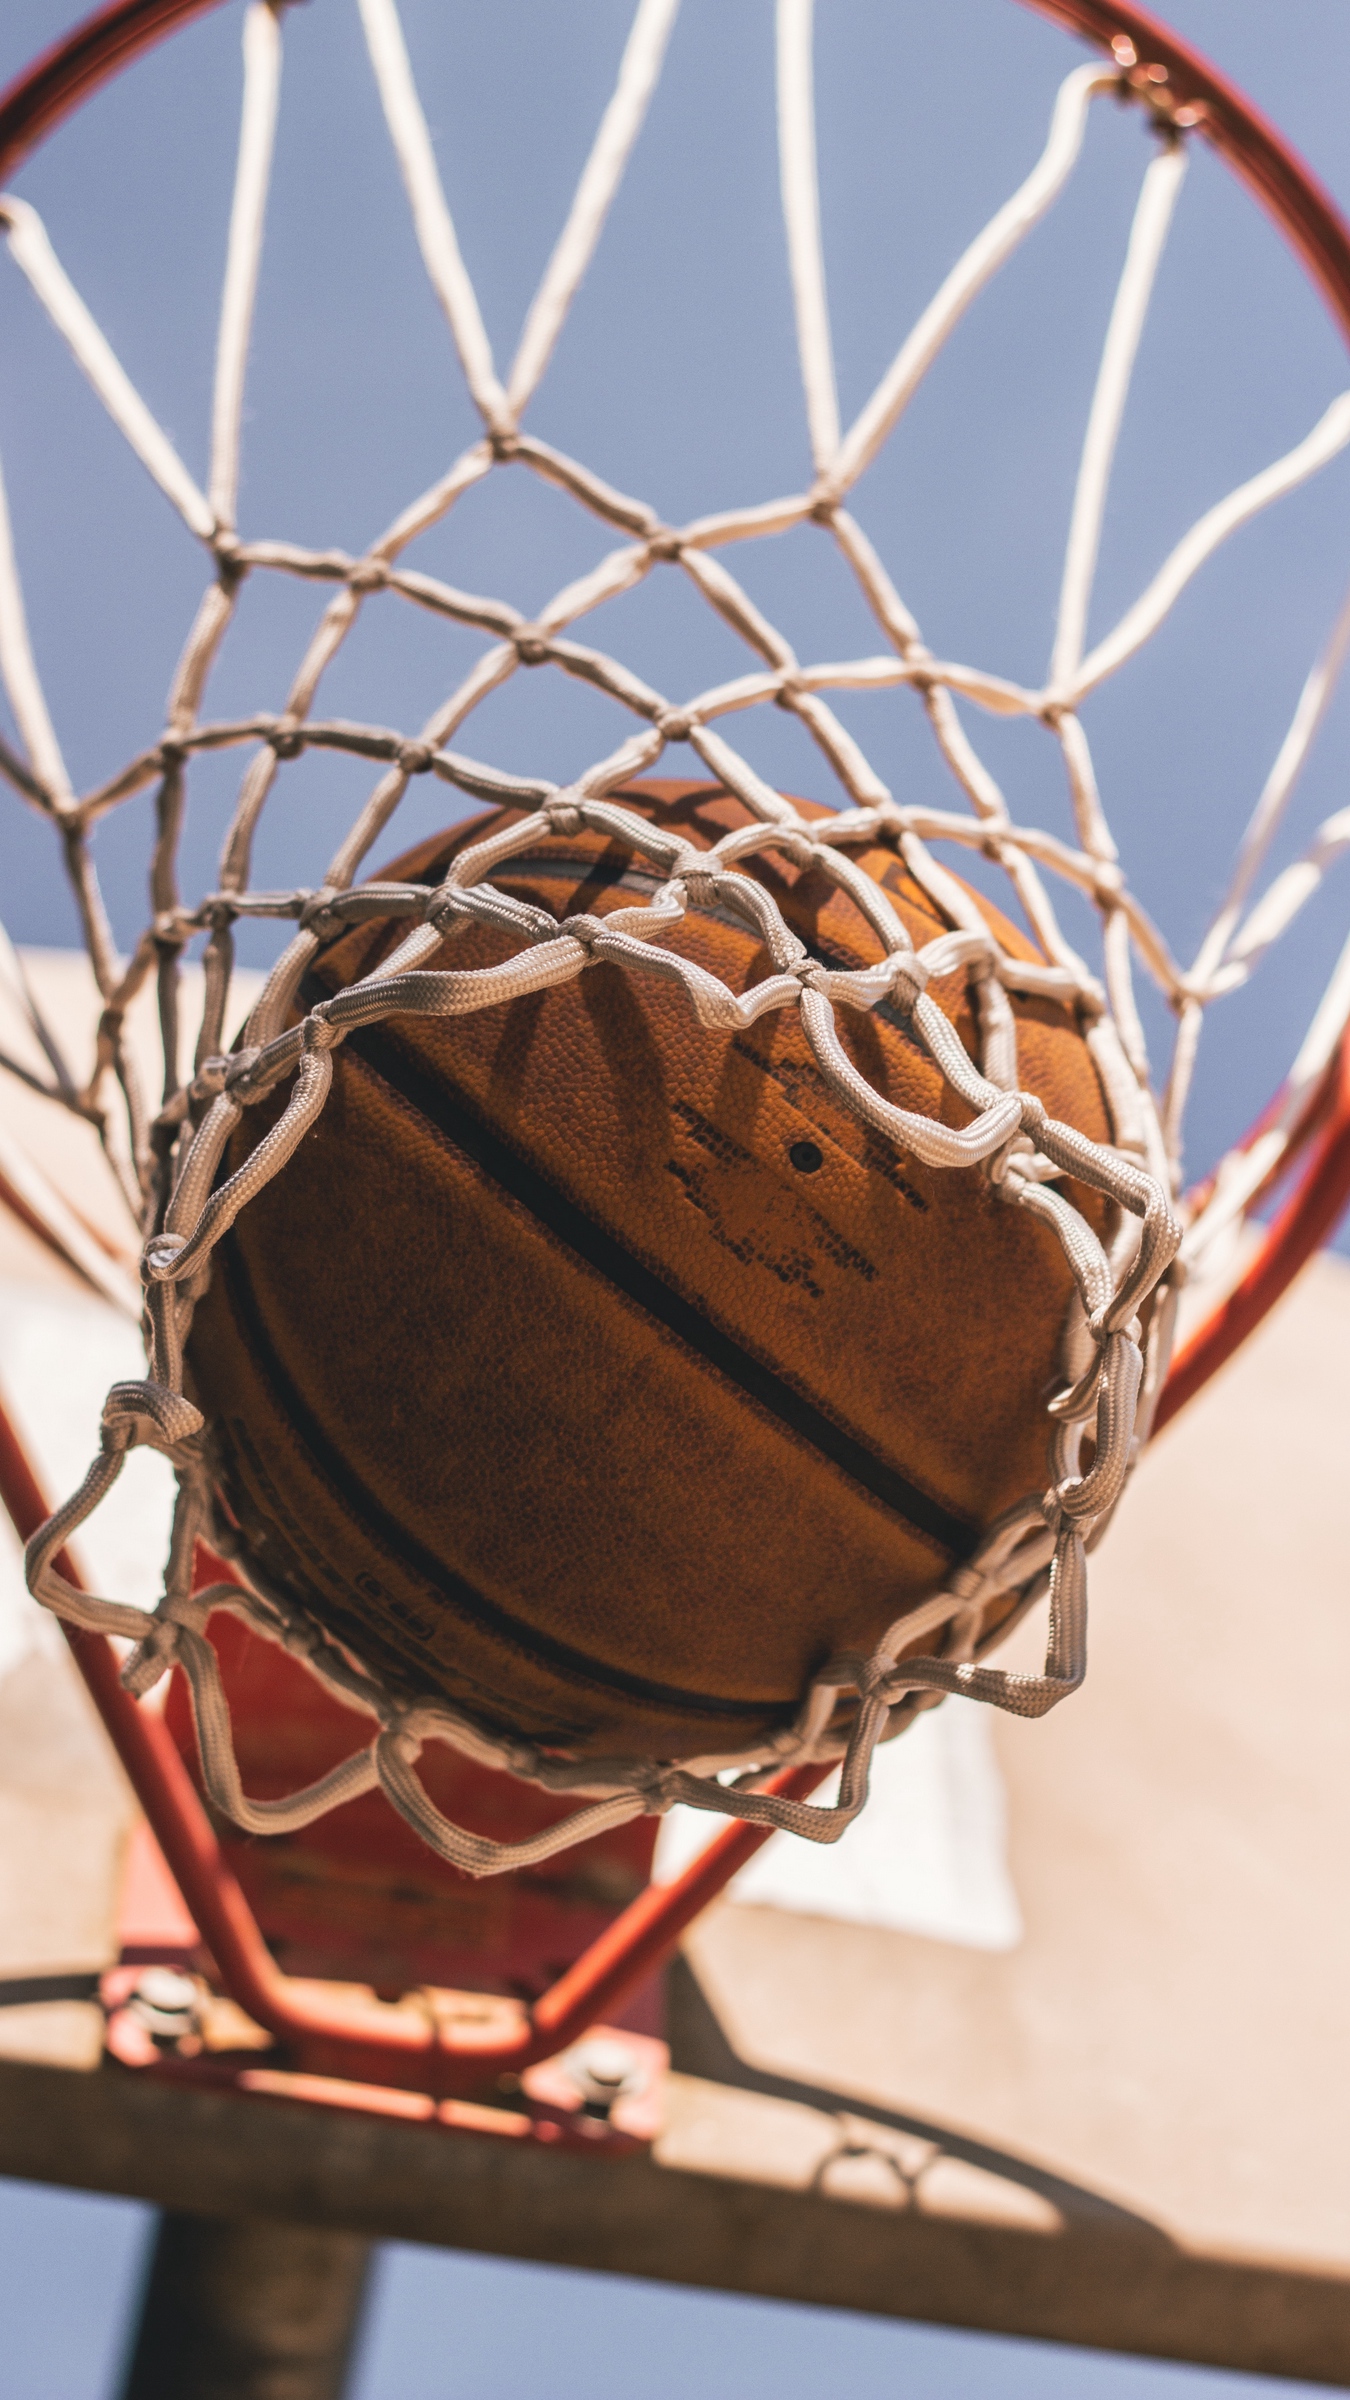 Wallpaper Basketball, Basketball Net, Ball - Basketball Wallpaper Iphone , HD Wallpaper & Backgrounds